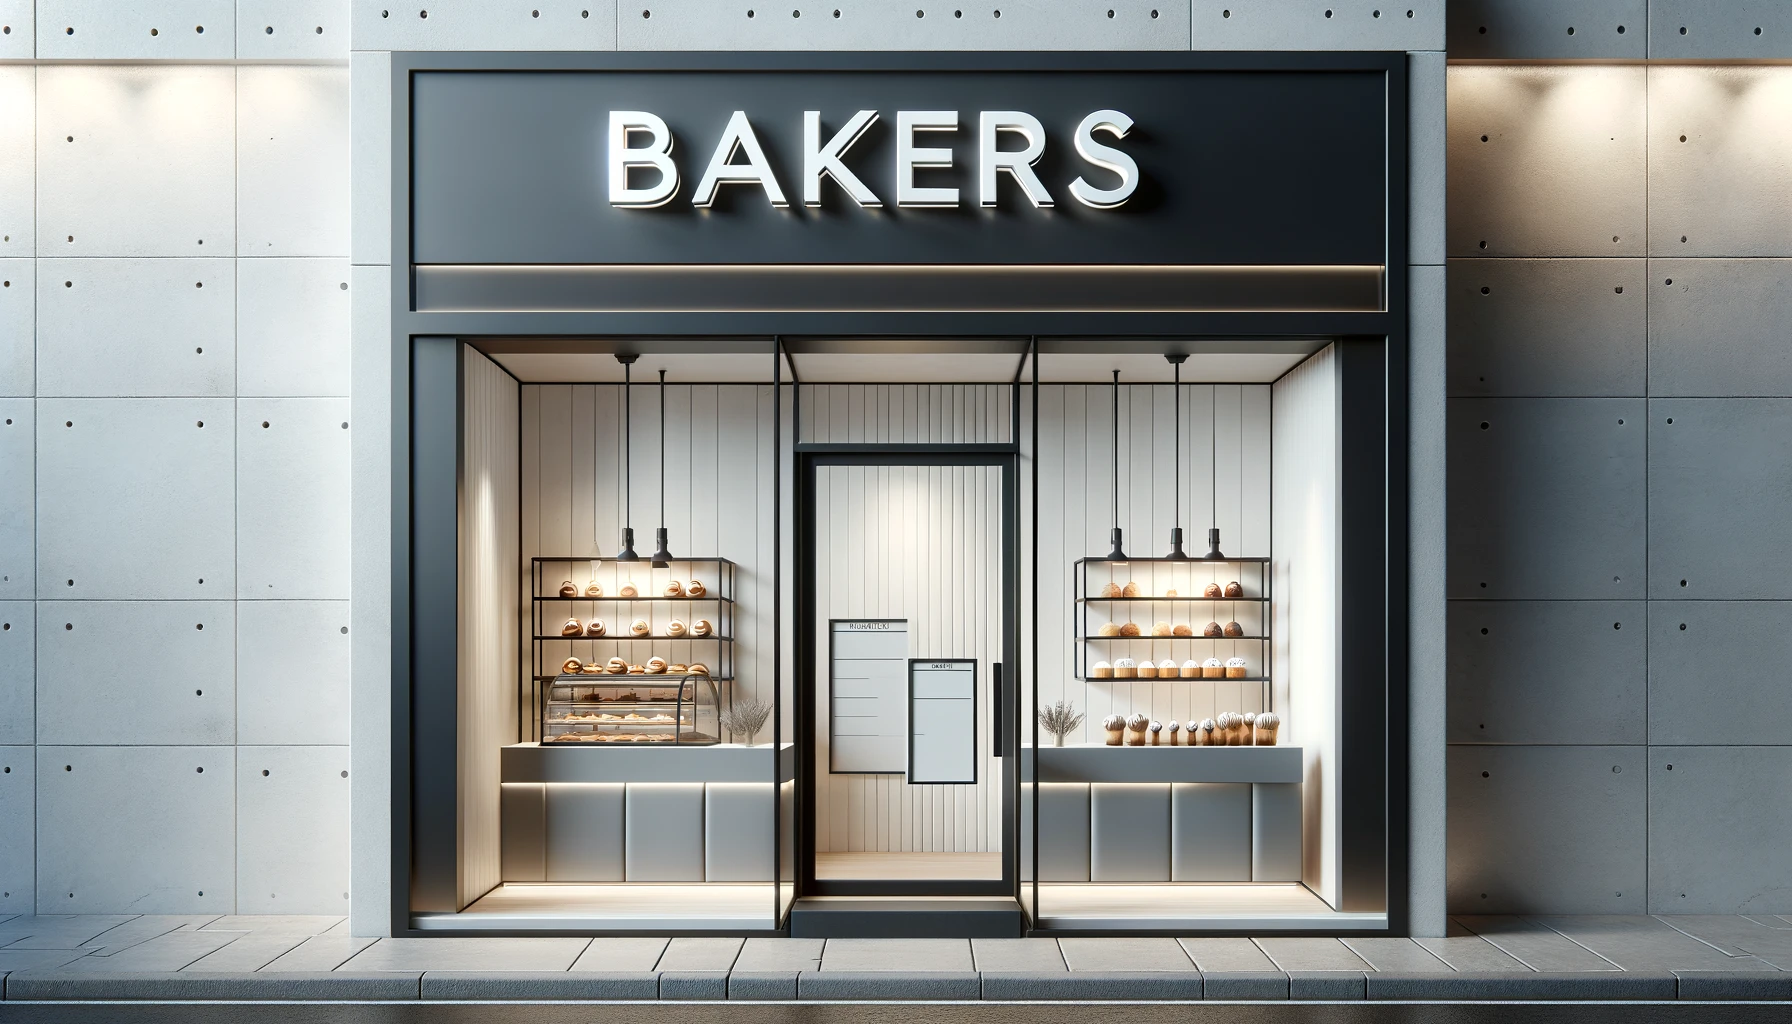 bakers shop front design ideas